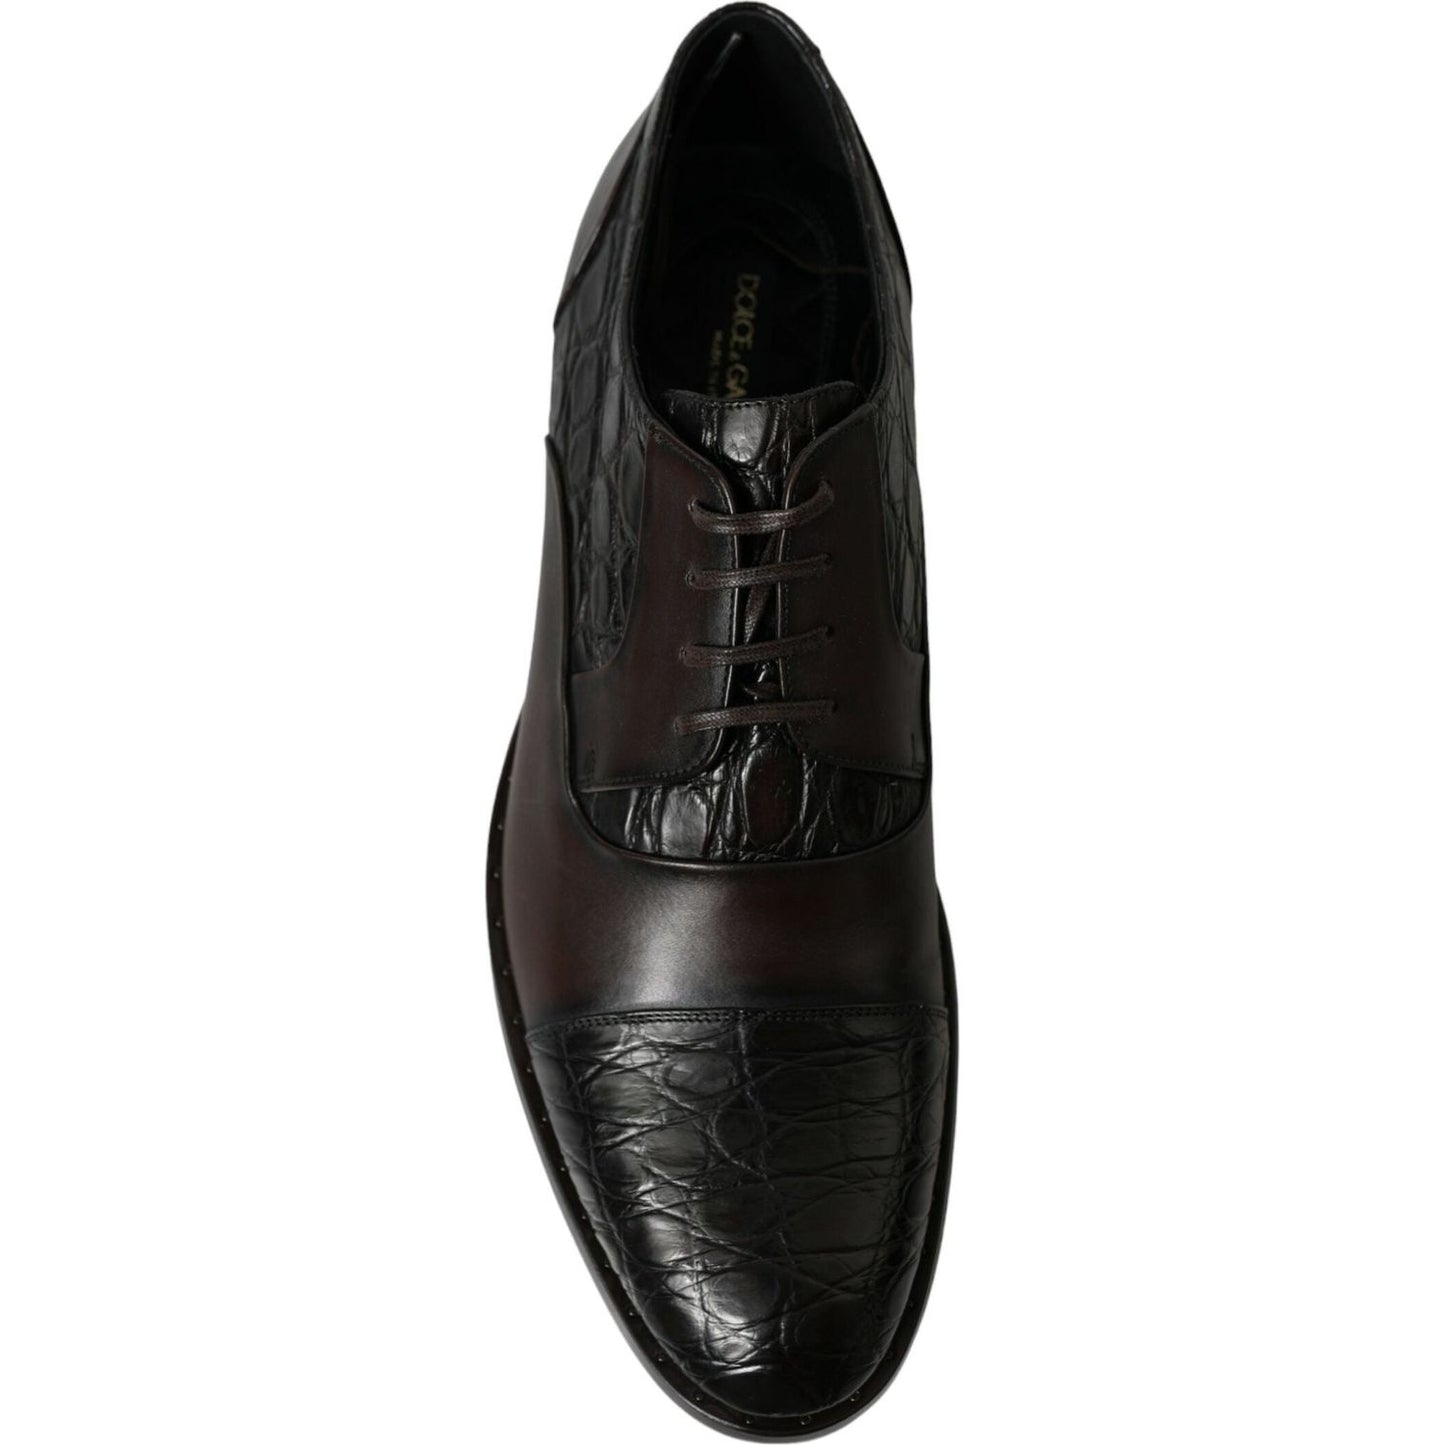 Dolce & Gabbana Elegant Brown Formal Derby Dress Shoes brown-exotic-leather-formal-men-dress-shoes